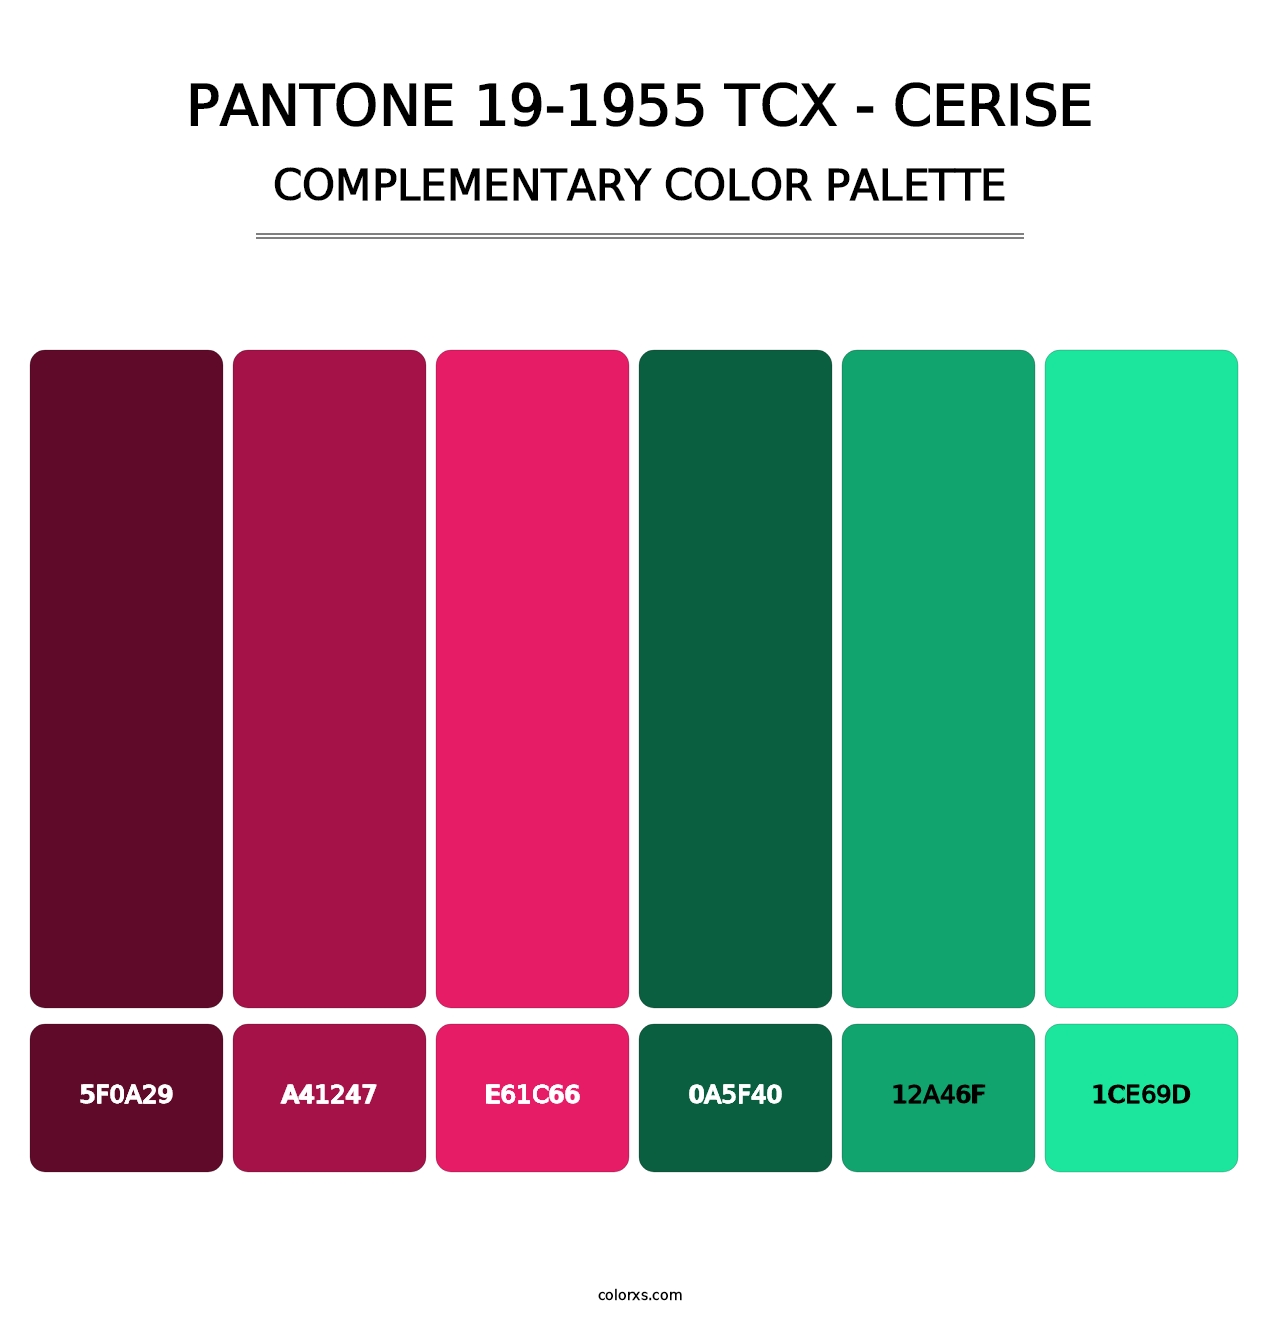 PANTONE 19-1955 TCX - Cerise - Complementary Color Palette